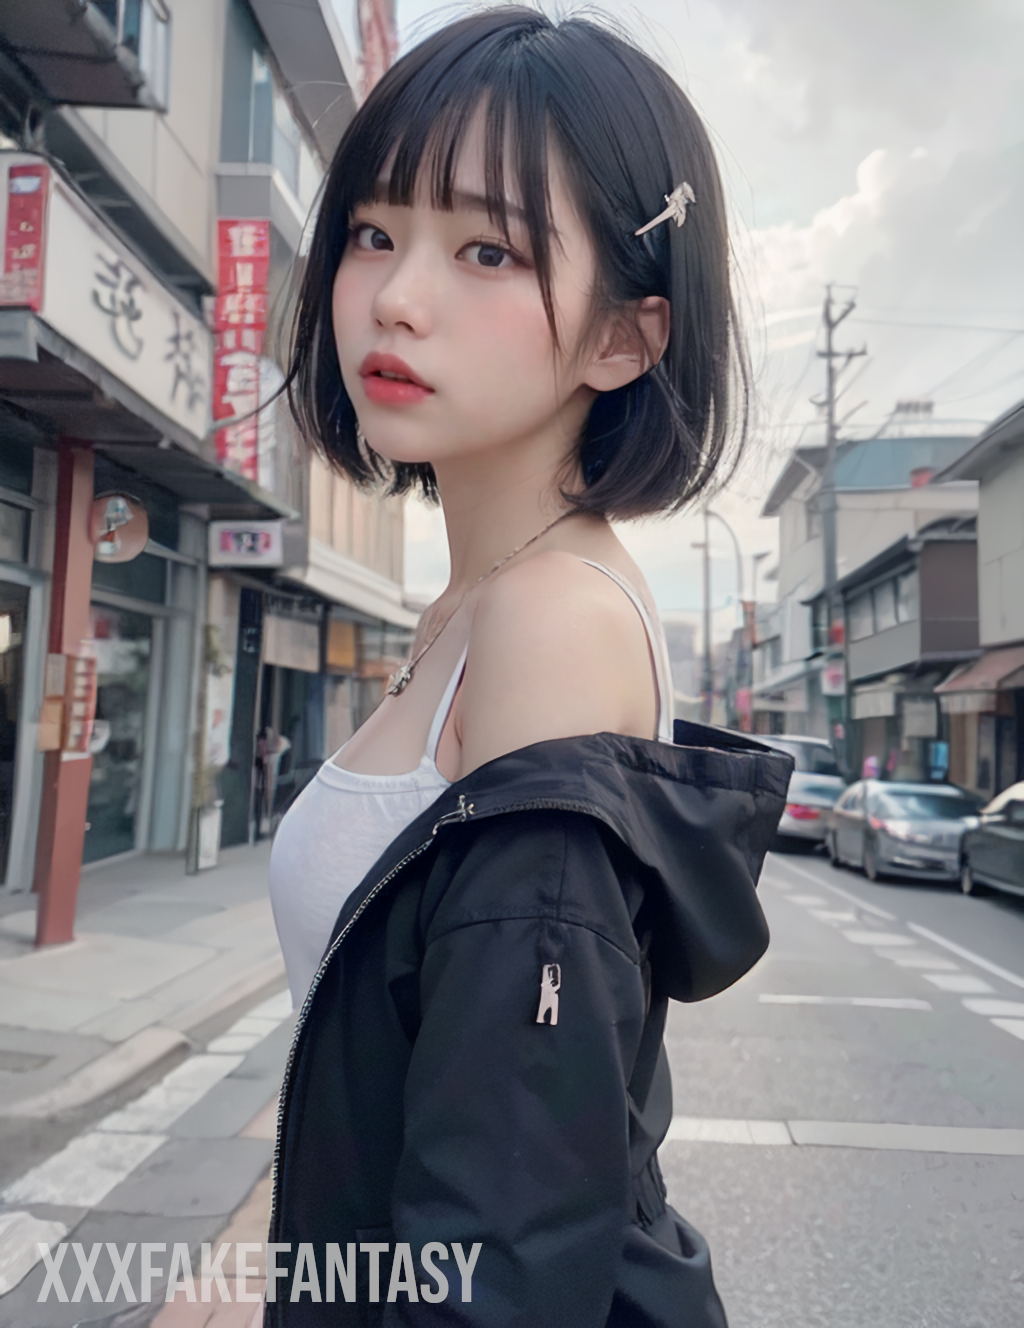 Japanese girl standing on street